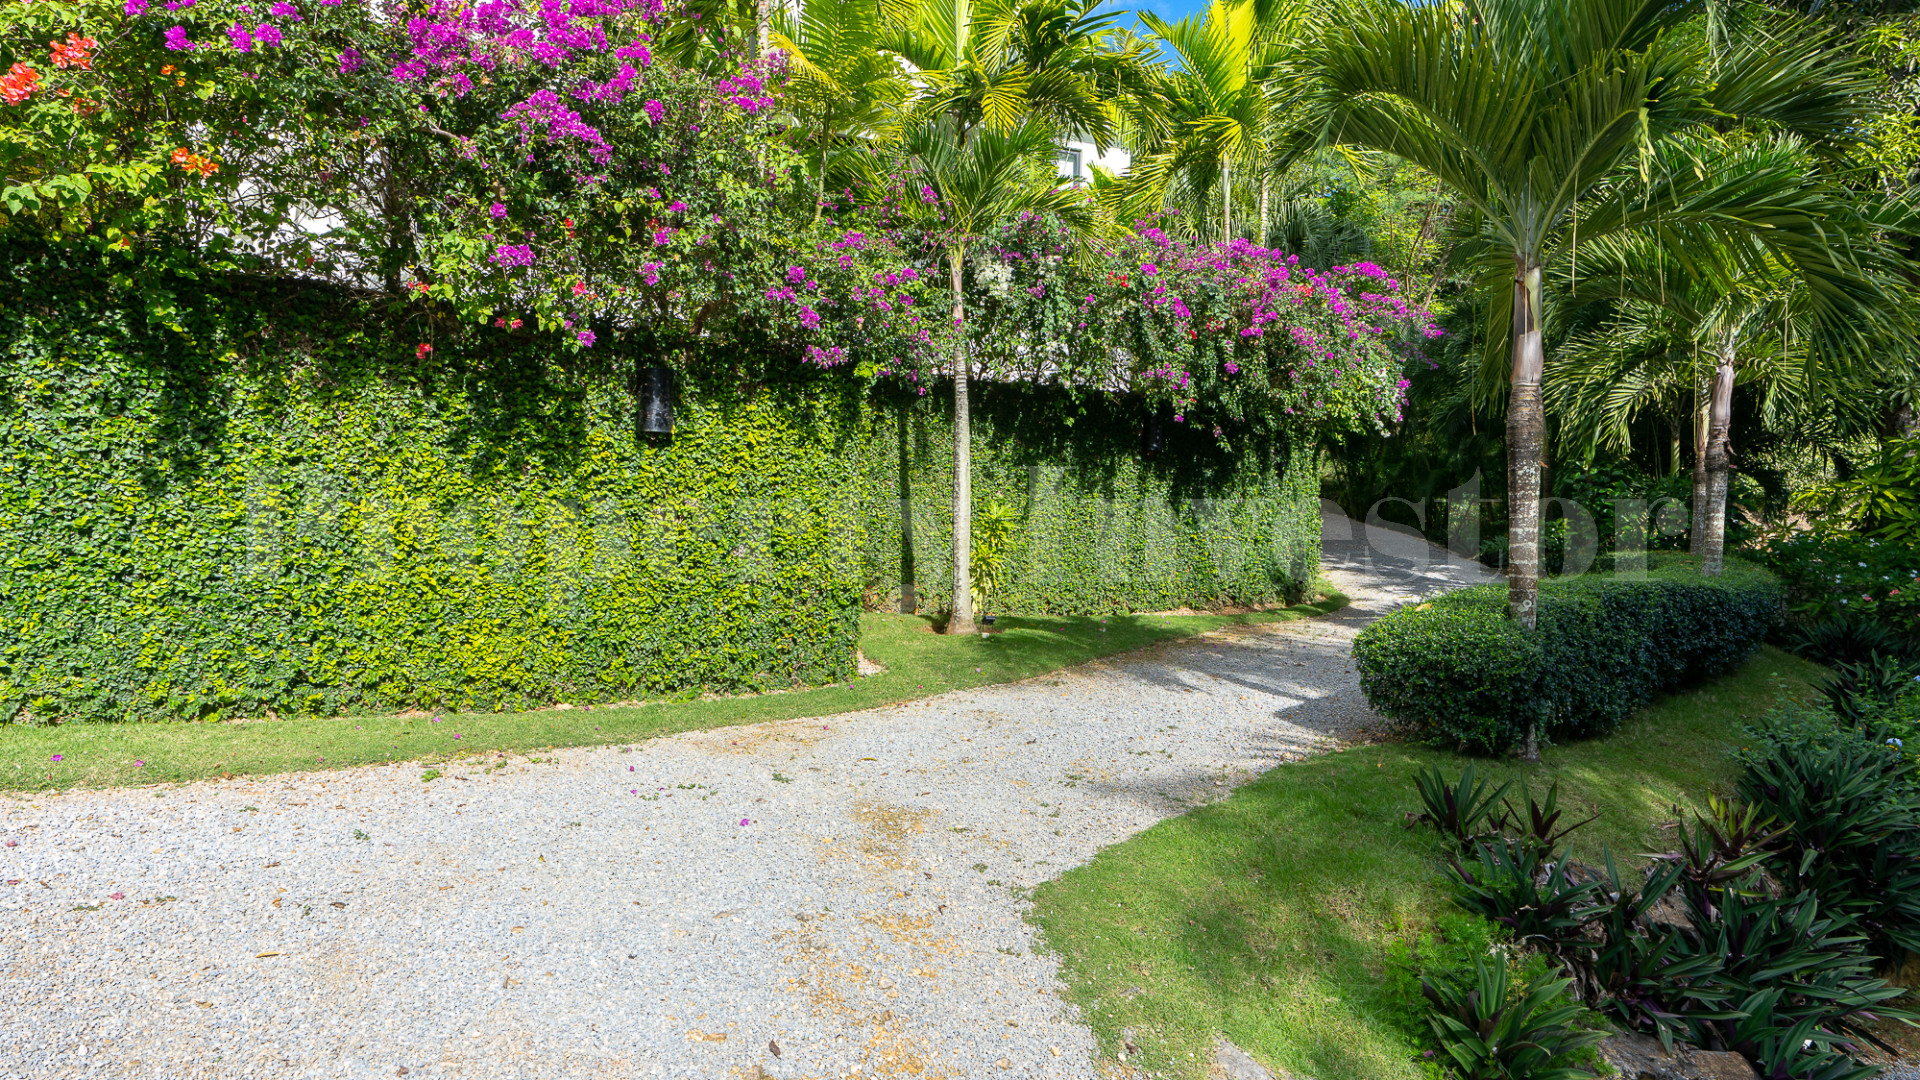 Spectacular Custom Villa Overlooking Las Terrenas & Playa Bonita with Amazing Outdoor Spaces